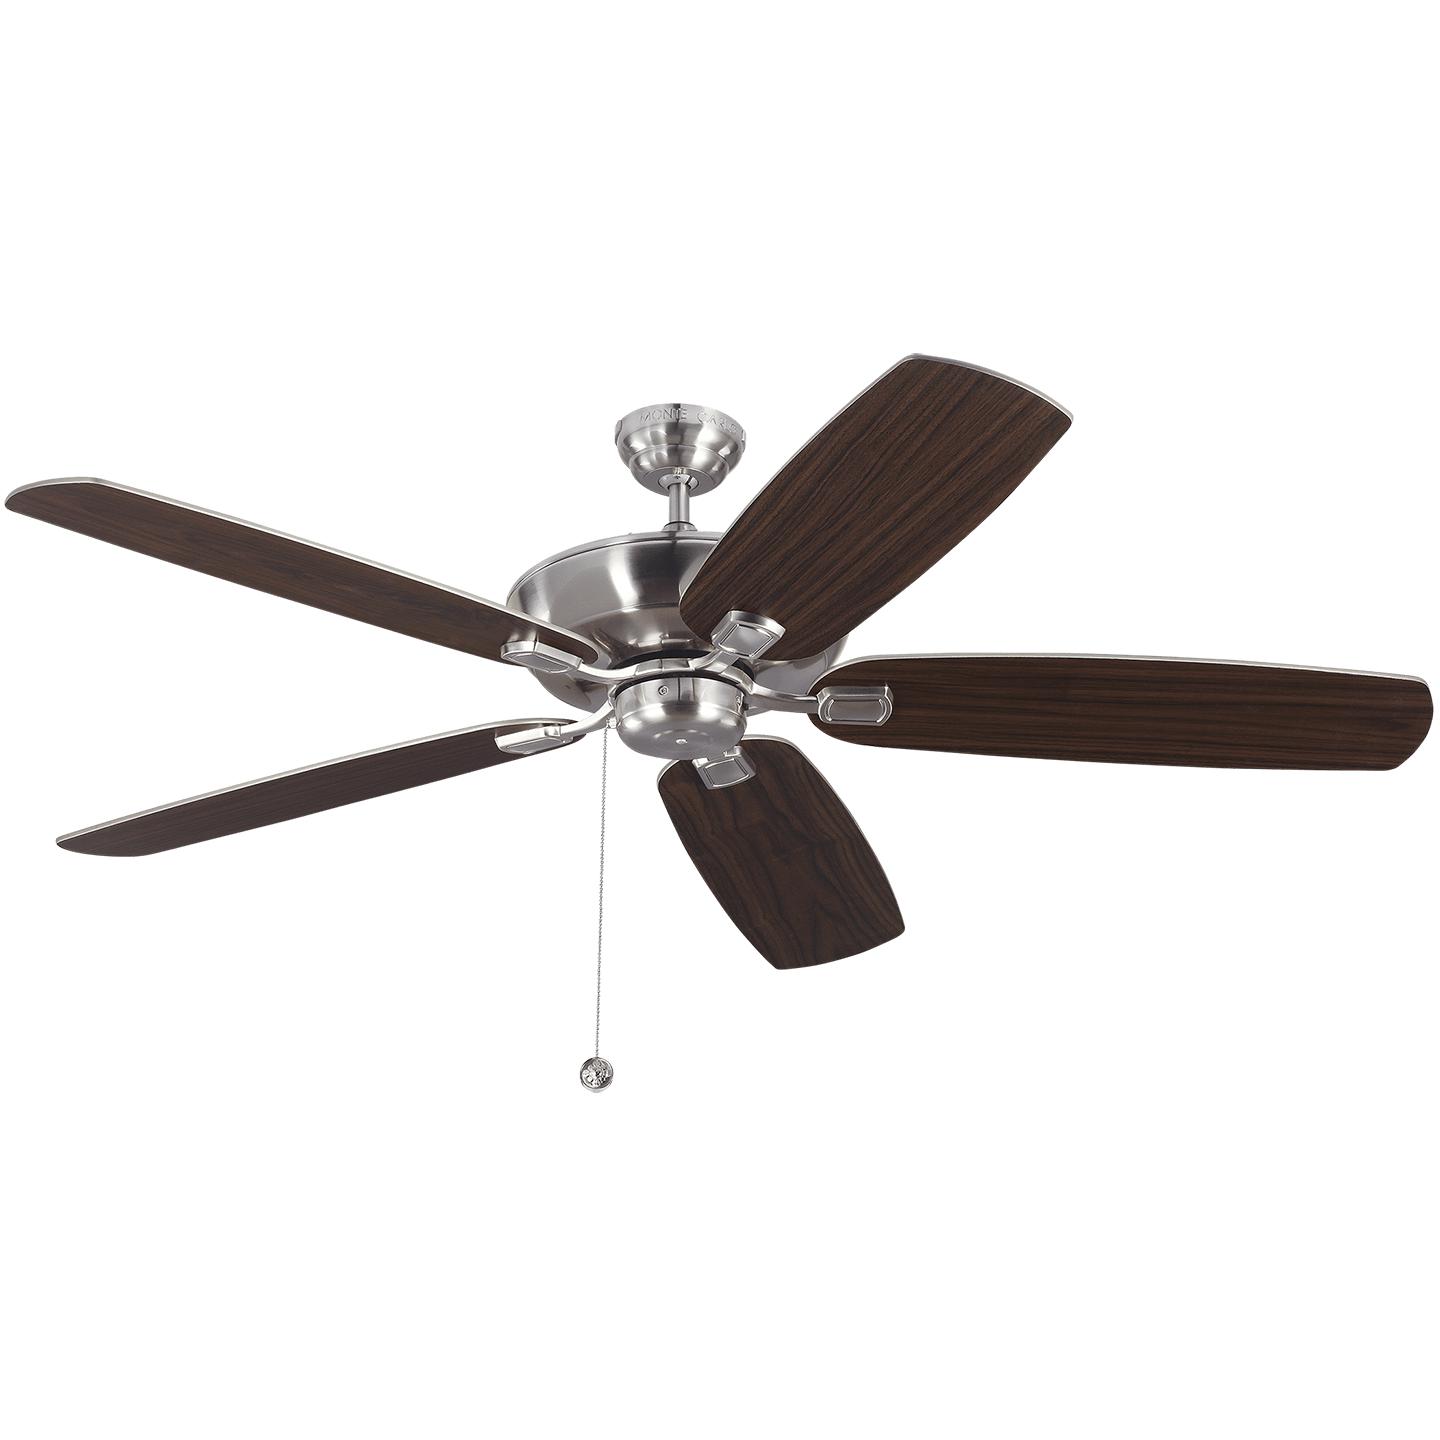 Купить Потолочный вентилятор Colony 60" Ceiling Fan в интернет-магазине roooms.ru